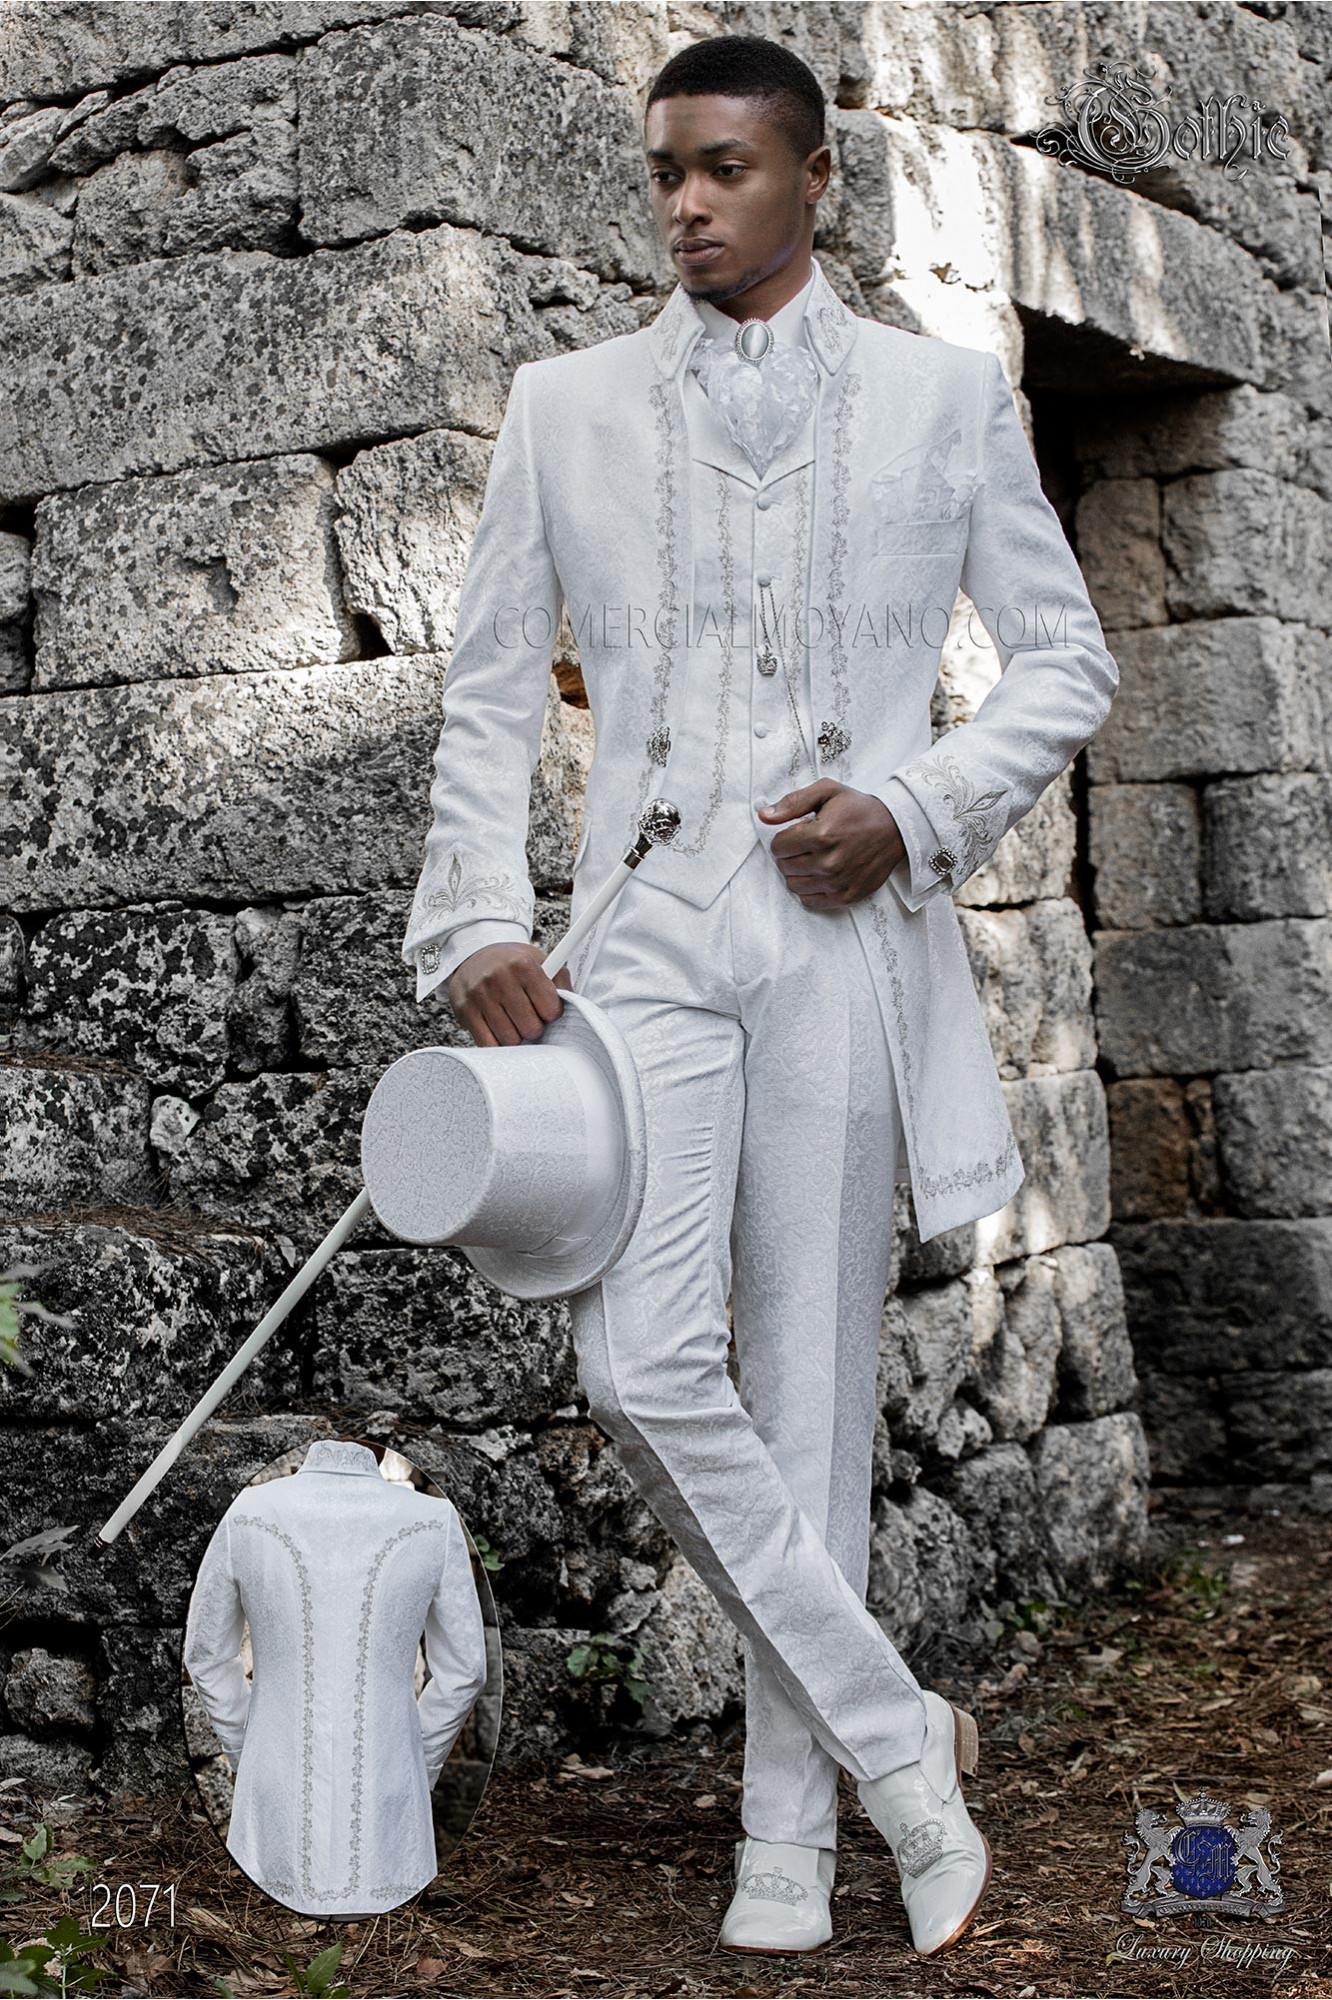 levita de época cuello Napoleón en tejido jacquard blanco con bordados plateados y broche de cristal modelo: 2071 Mario Moyano colección Barroco